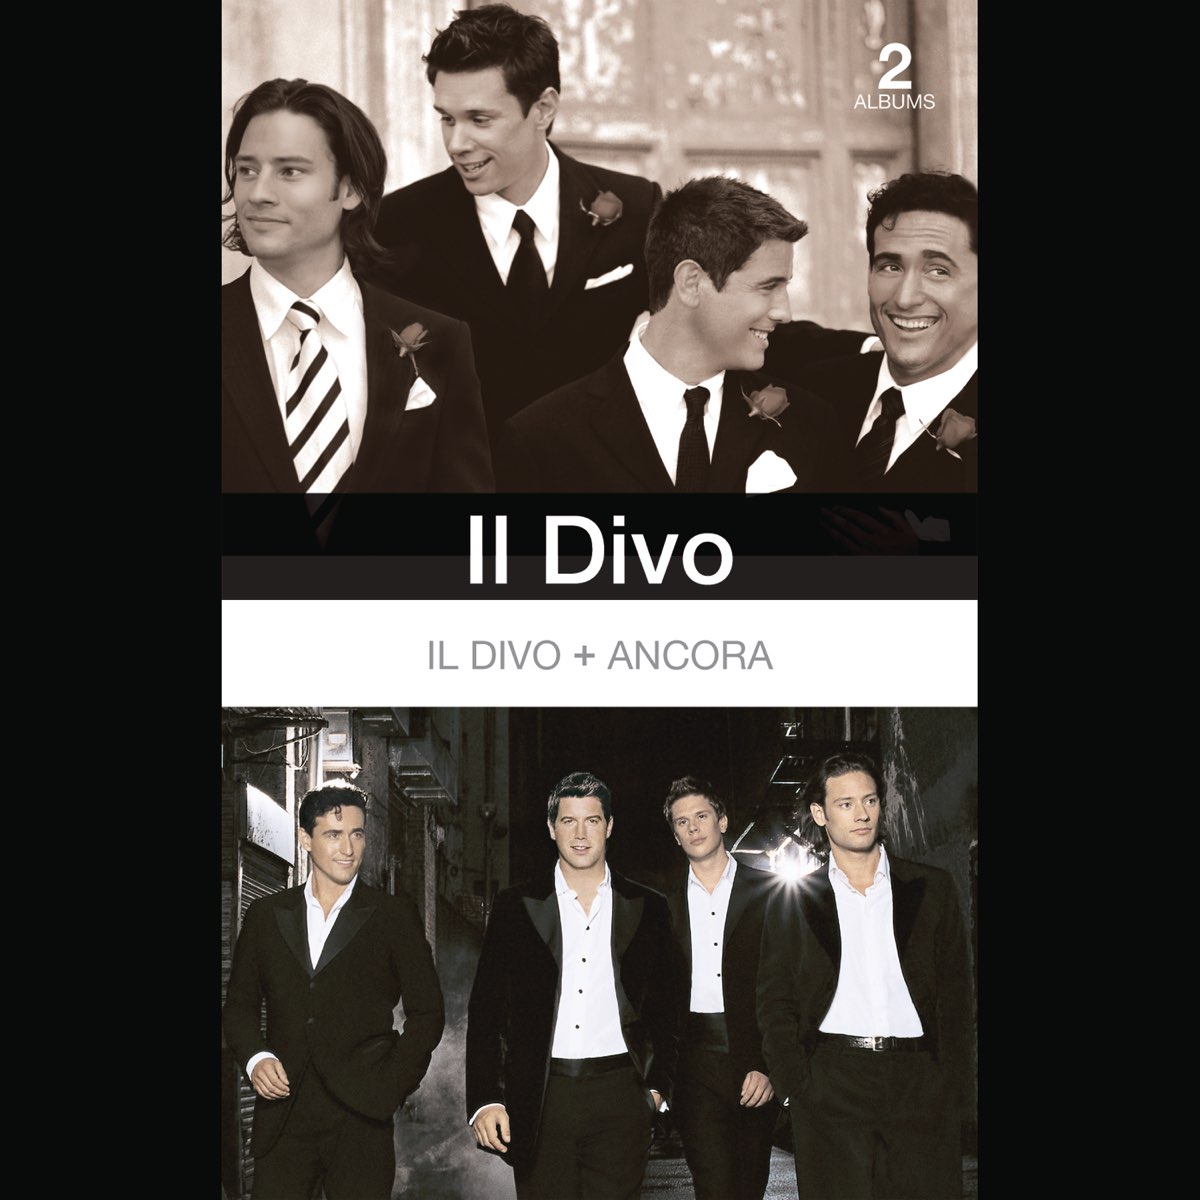 Il Divo - Ancora by Il Divo on Apple Music